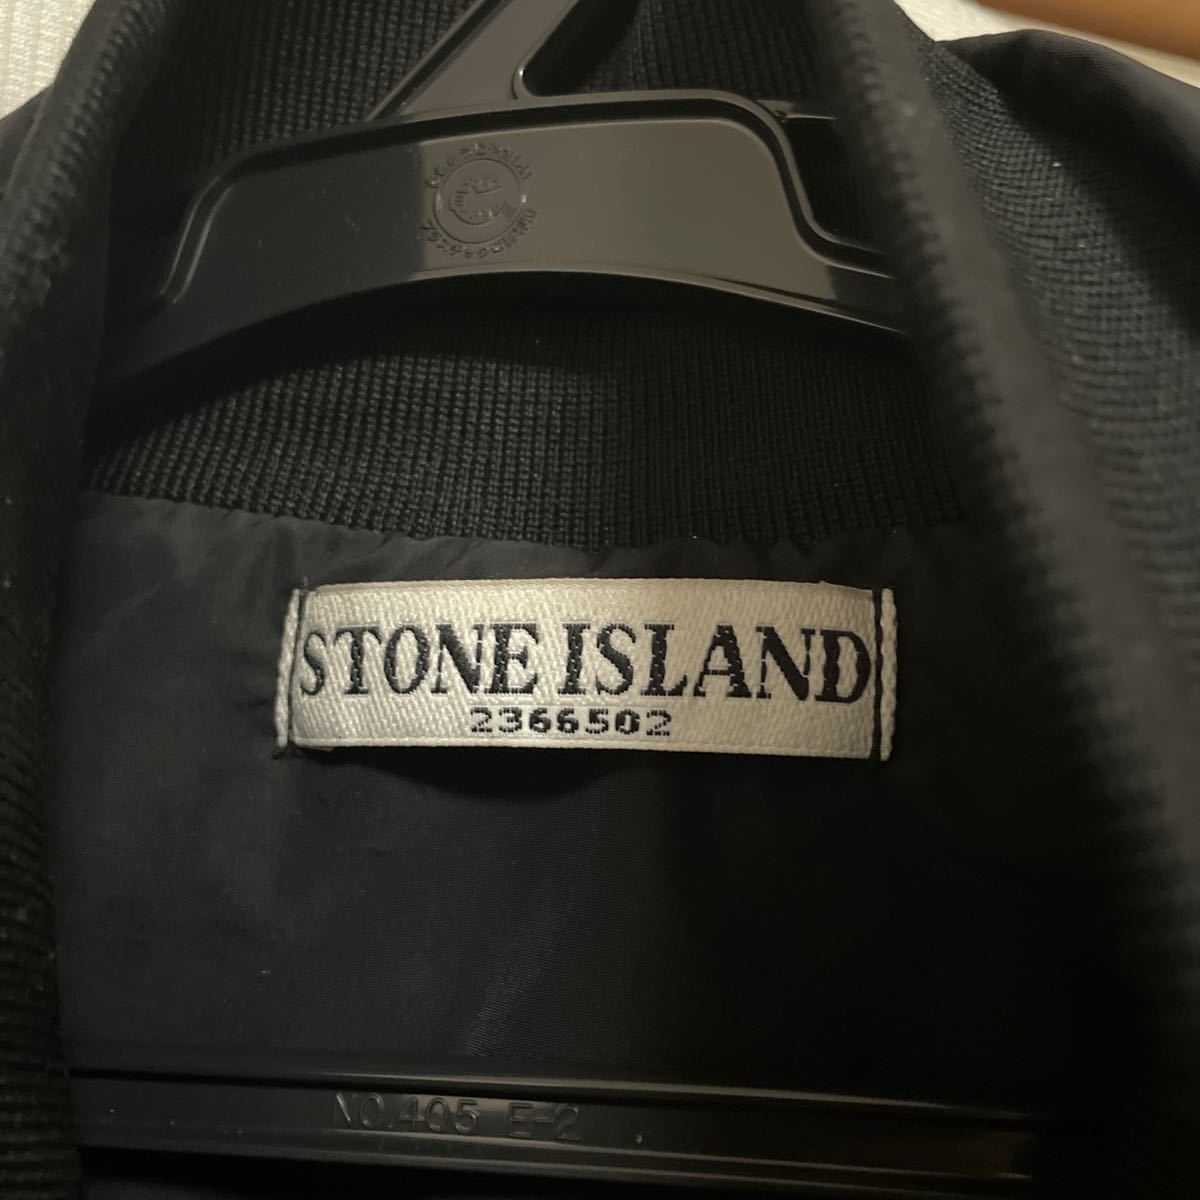 STONE ISLAND / ストーンアイランド 561542022 MICRO REPS M-65 フィールドジャケット